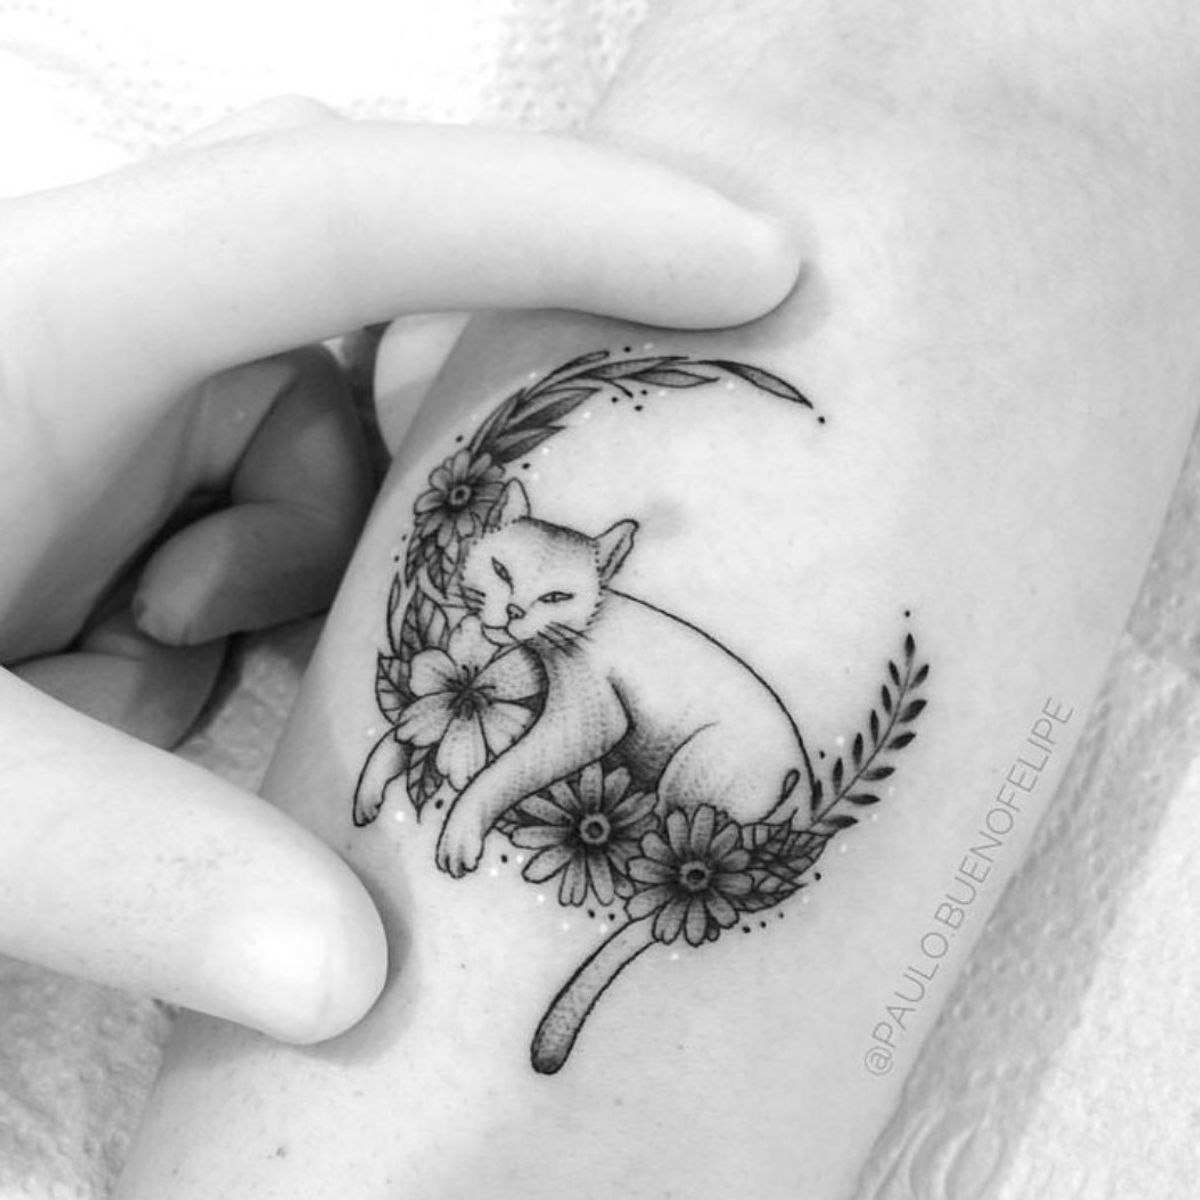 Tattoo uploaded by Sceleny • Tattoodo